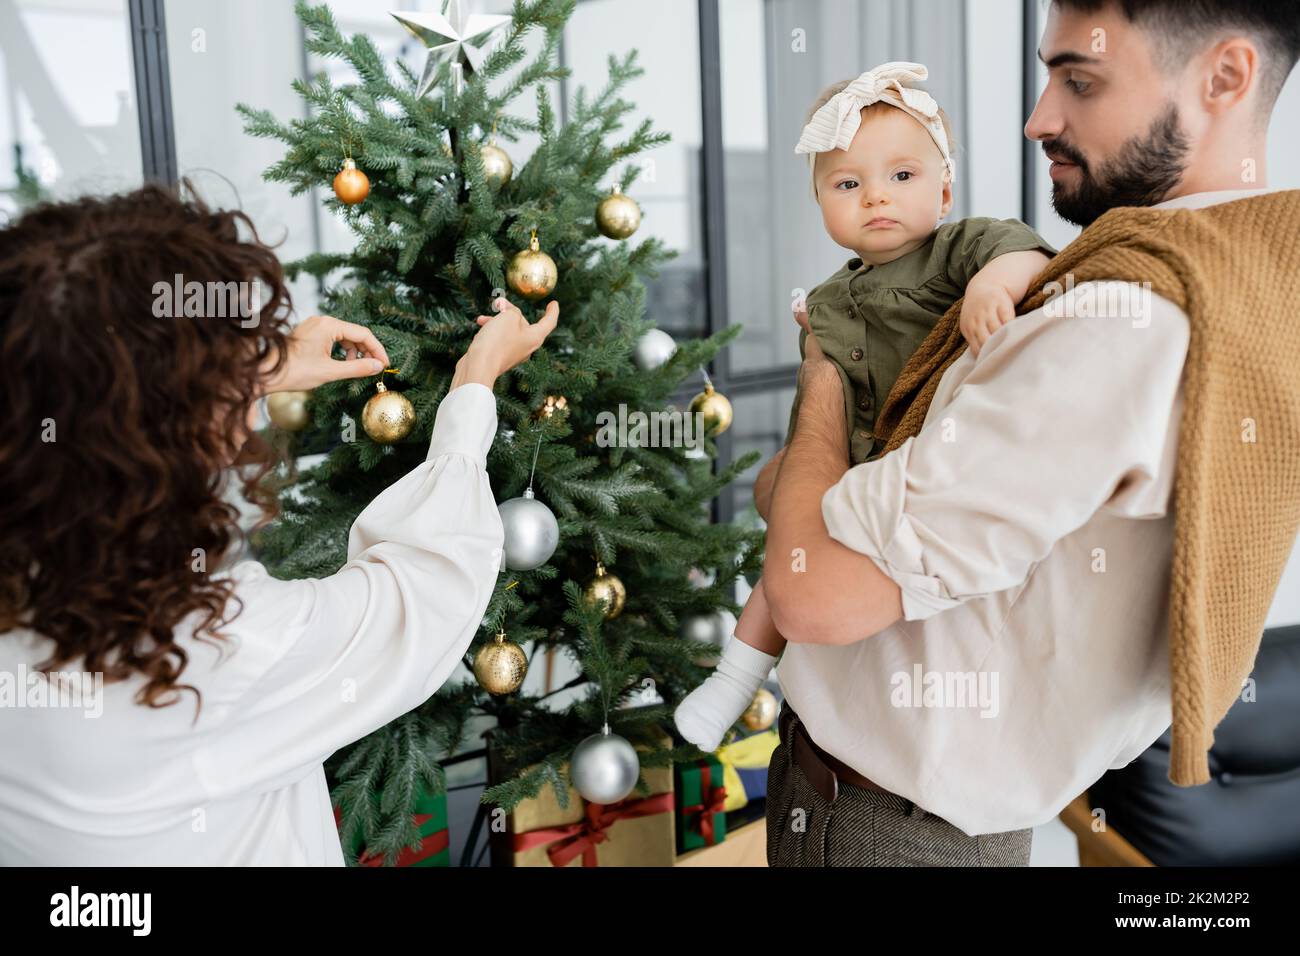 mujer rizada que adorna el árbol de navidad cerca del marido barbudo y la hija infantil, imagen de archivo Foto de stock